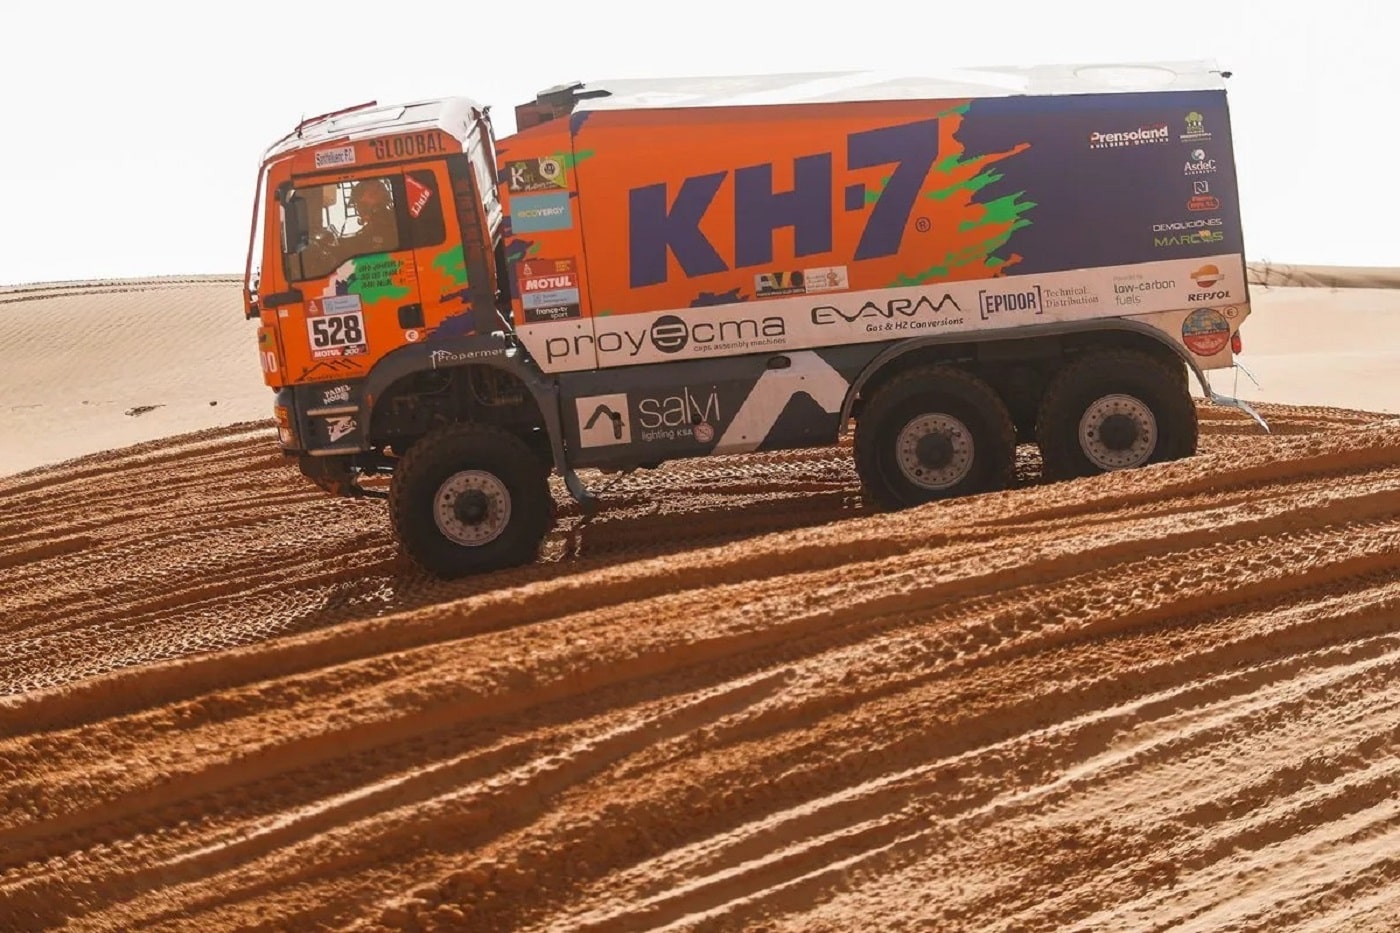 MAN del KH-7 Epsilon Team Dakar